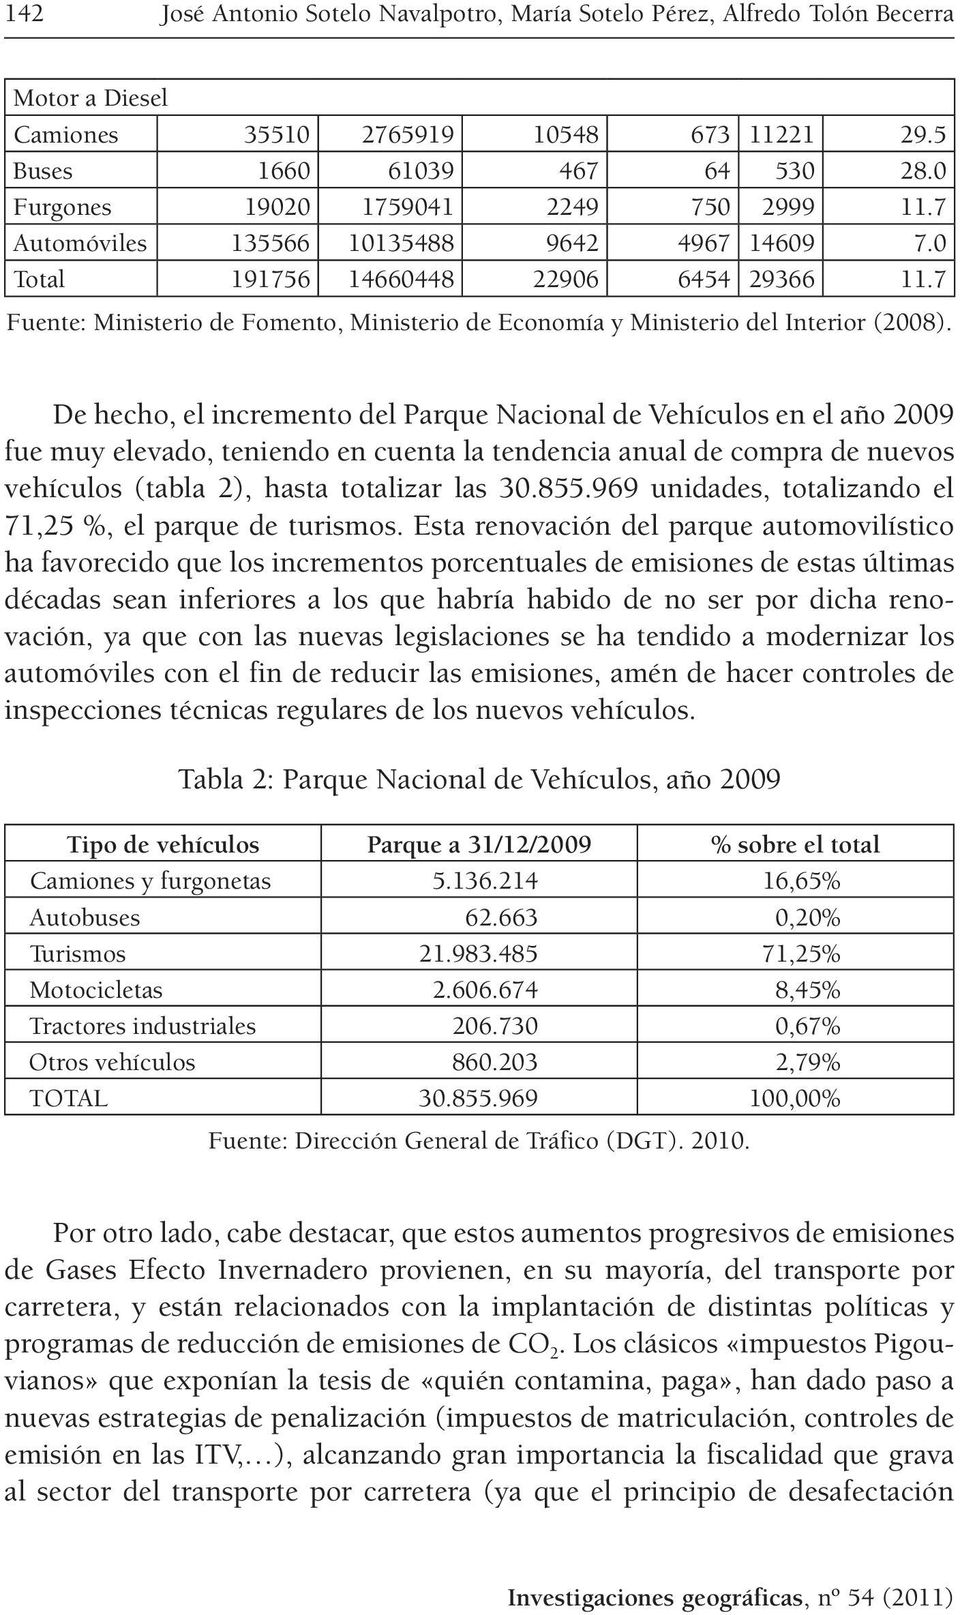 7 Fuente: Ministerio de Fomento, Ministerio de Economía y Ministerio del Interior (2008).